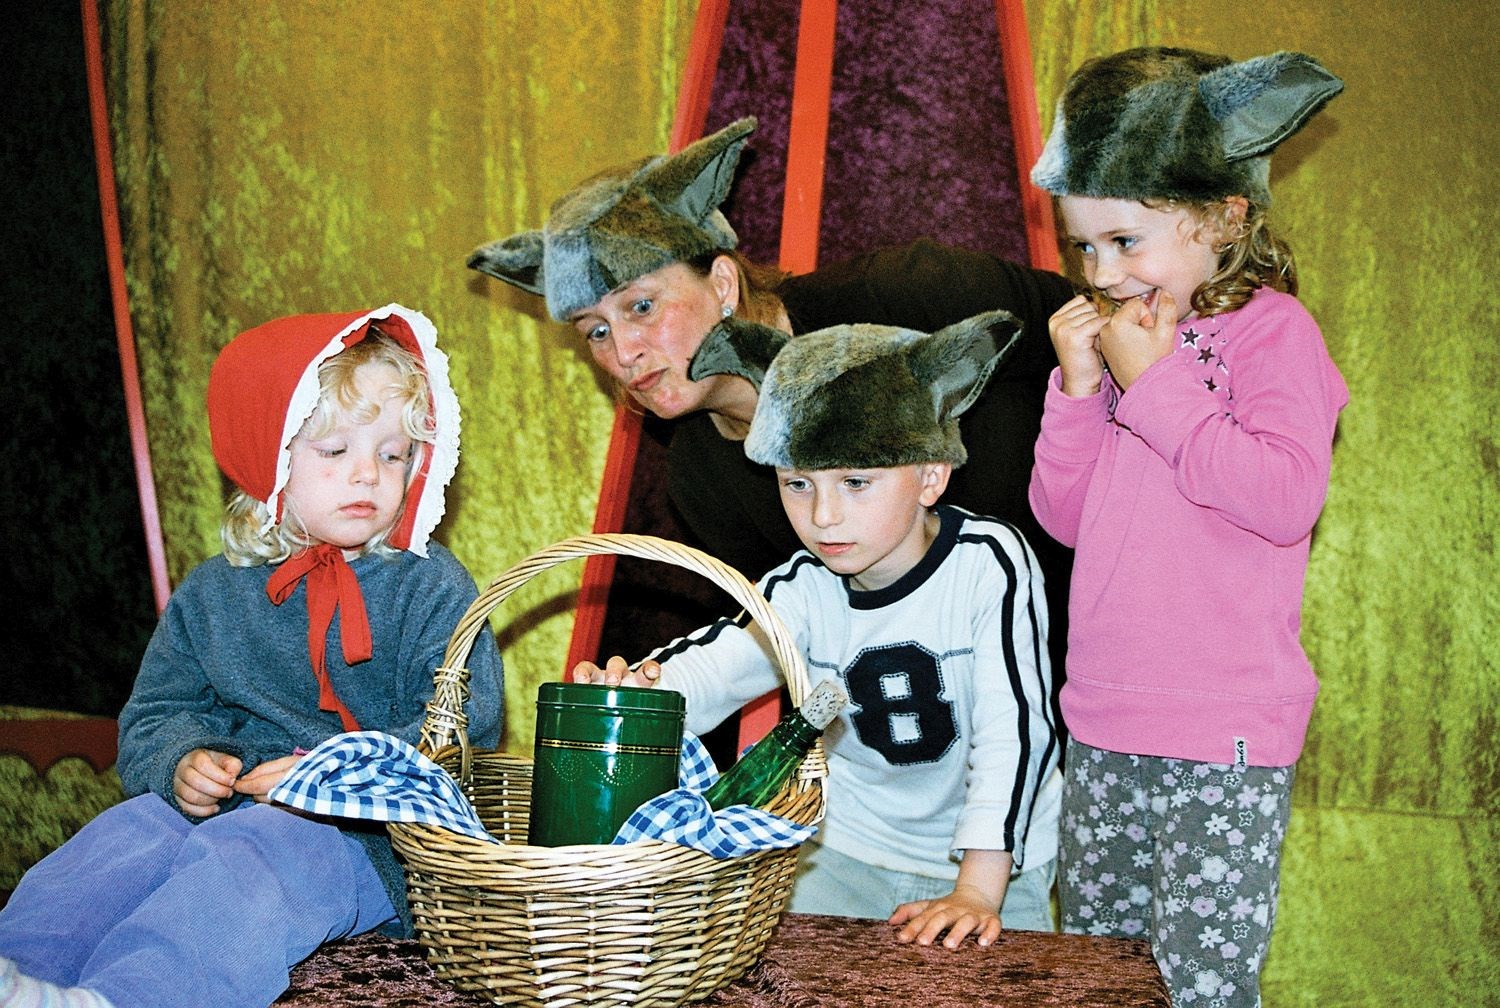 Rødhætterne og De 3 Bukke Bruse Legeforestilling med levende musik og sang af børneteatret Ratatas. Børn og voksne inviteres med i spillet. Eventyrene spilles hver for sig.